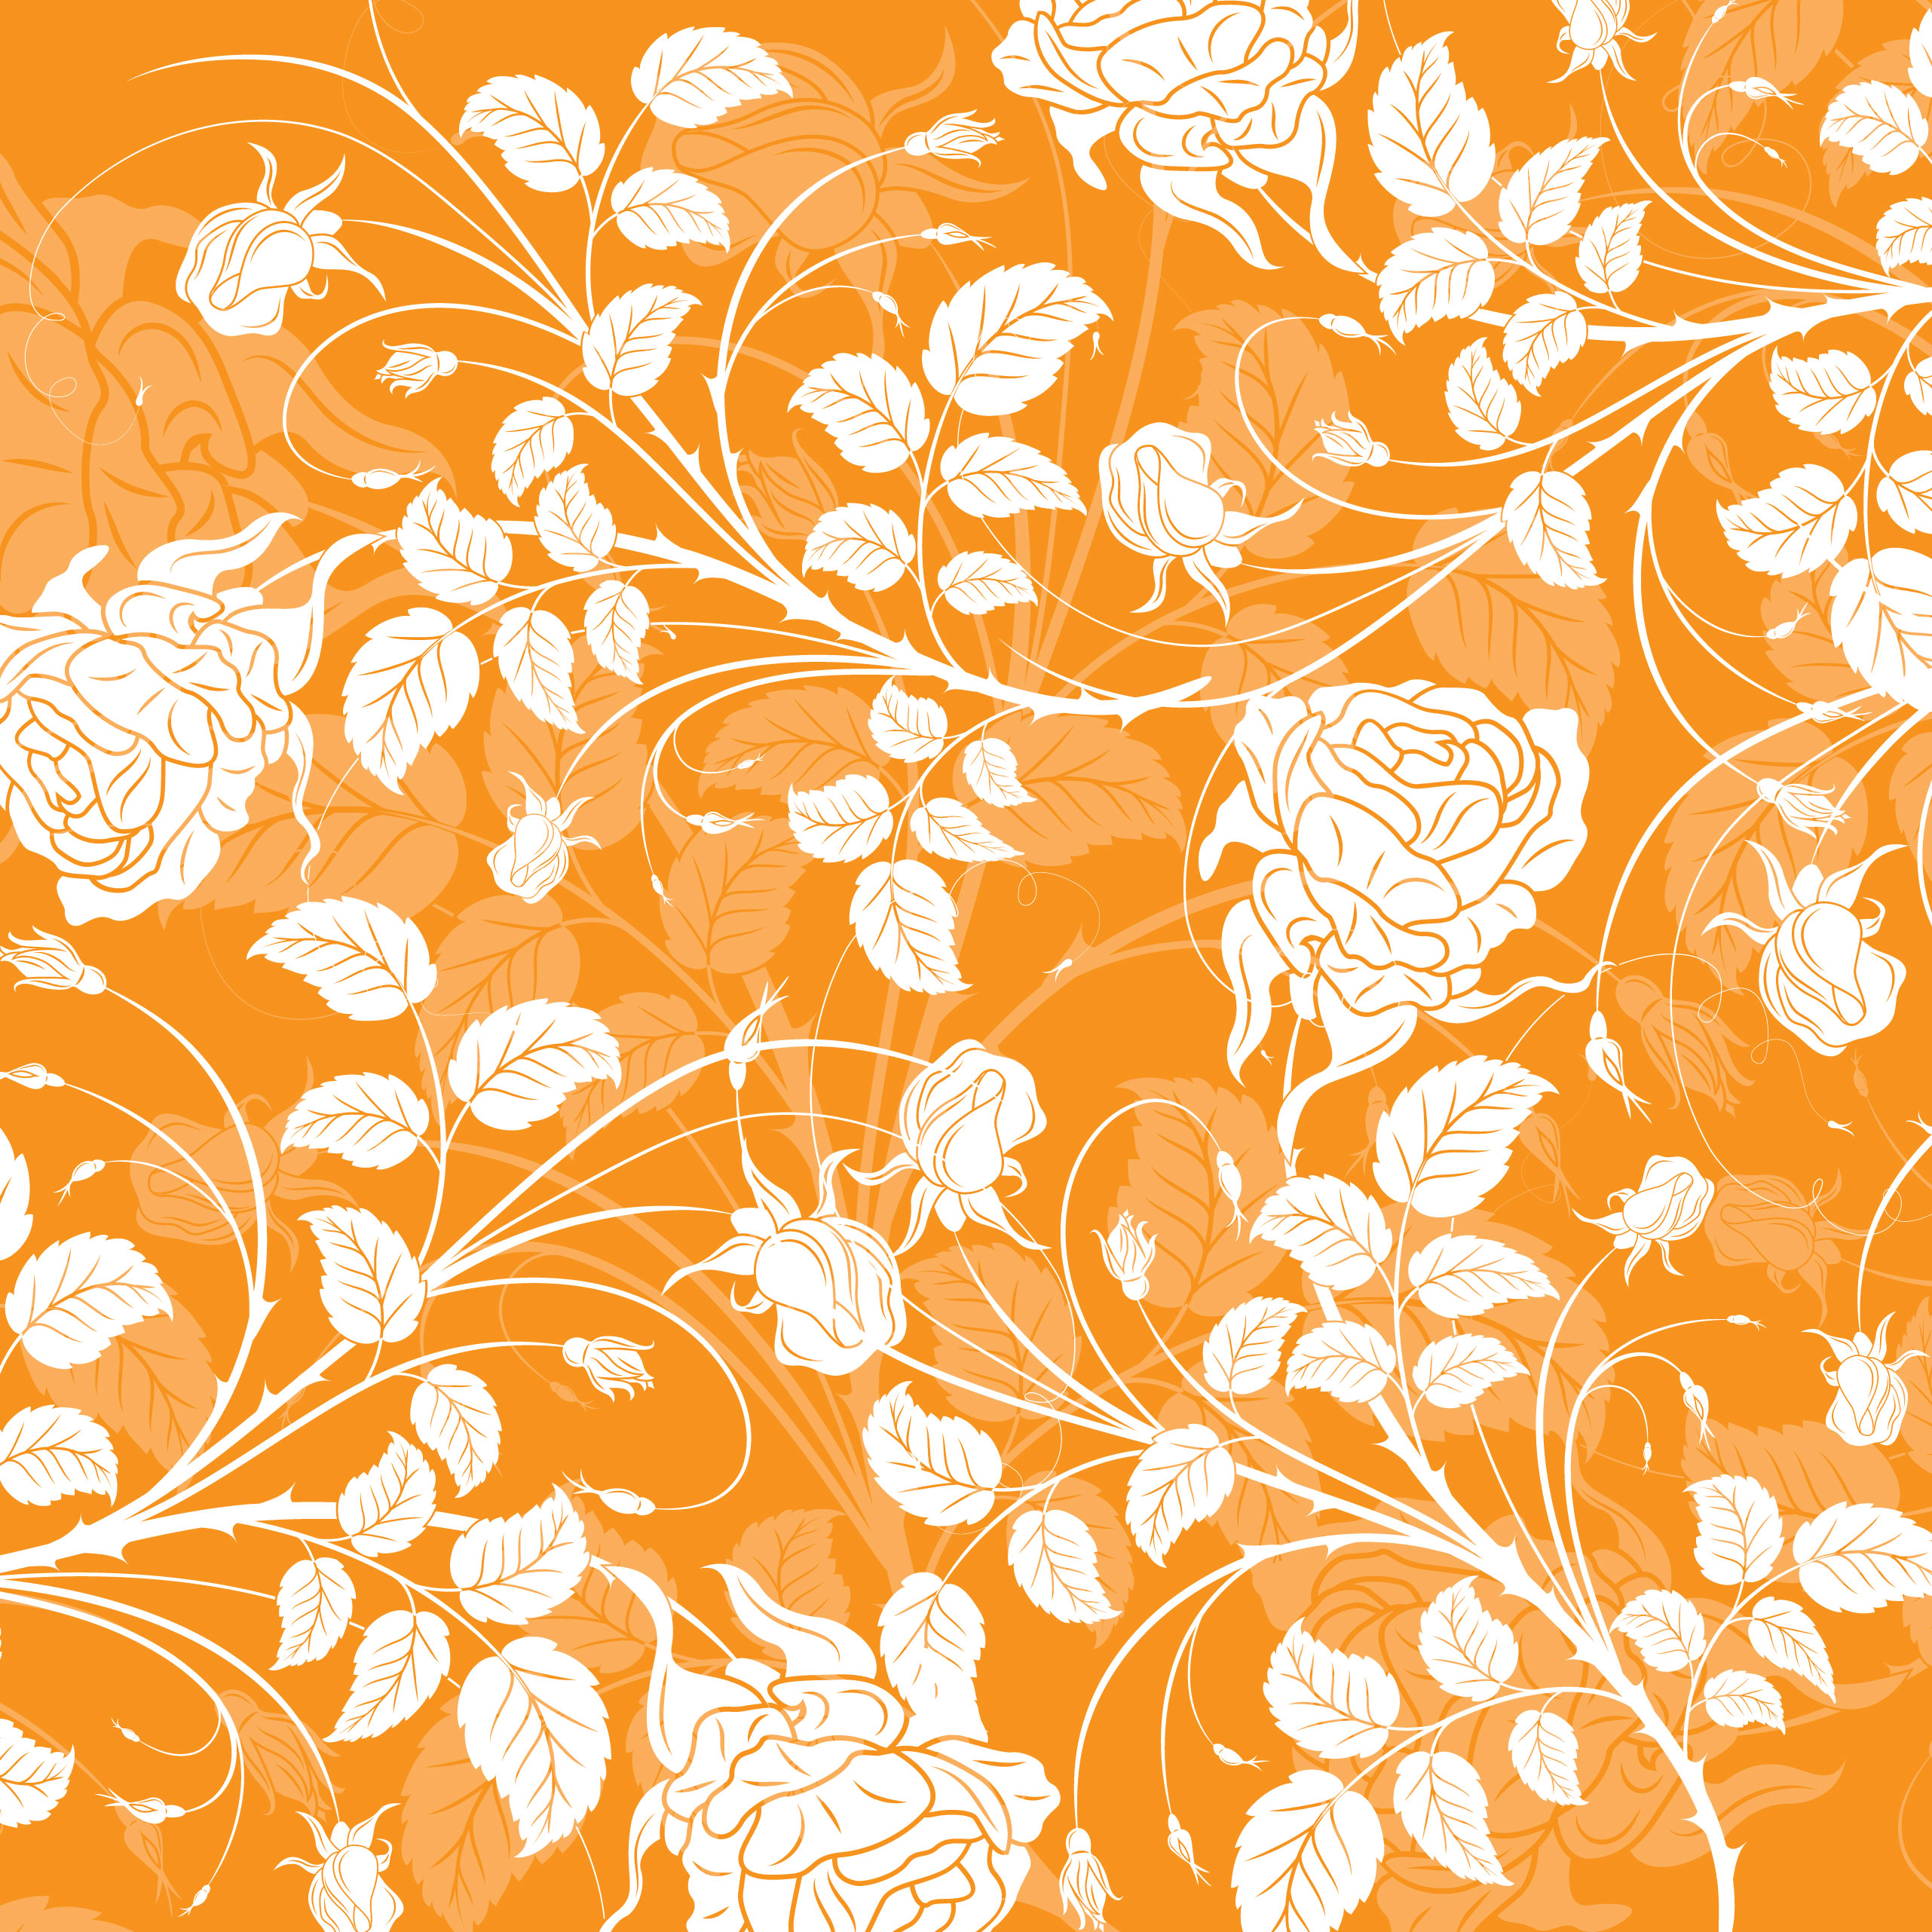 壁紙 背景イラスト 花の模様 柄 パターン No 287 オレンジ 橙 茎葉